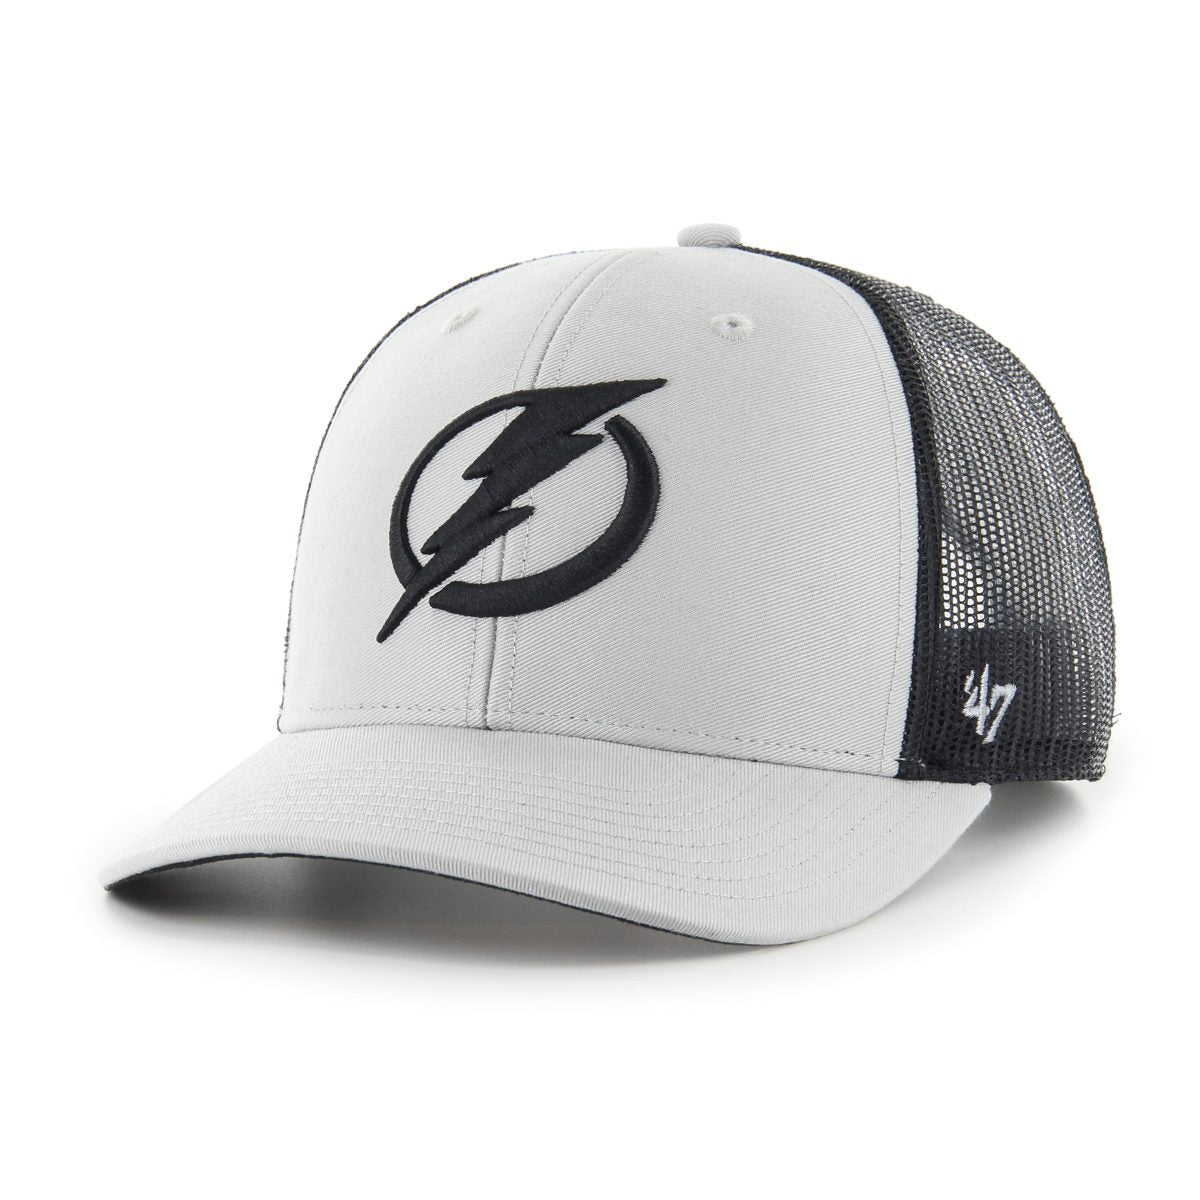 Tampa Bay Lightning '47 Gray Adjustable Trucker Hat